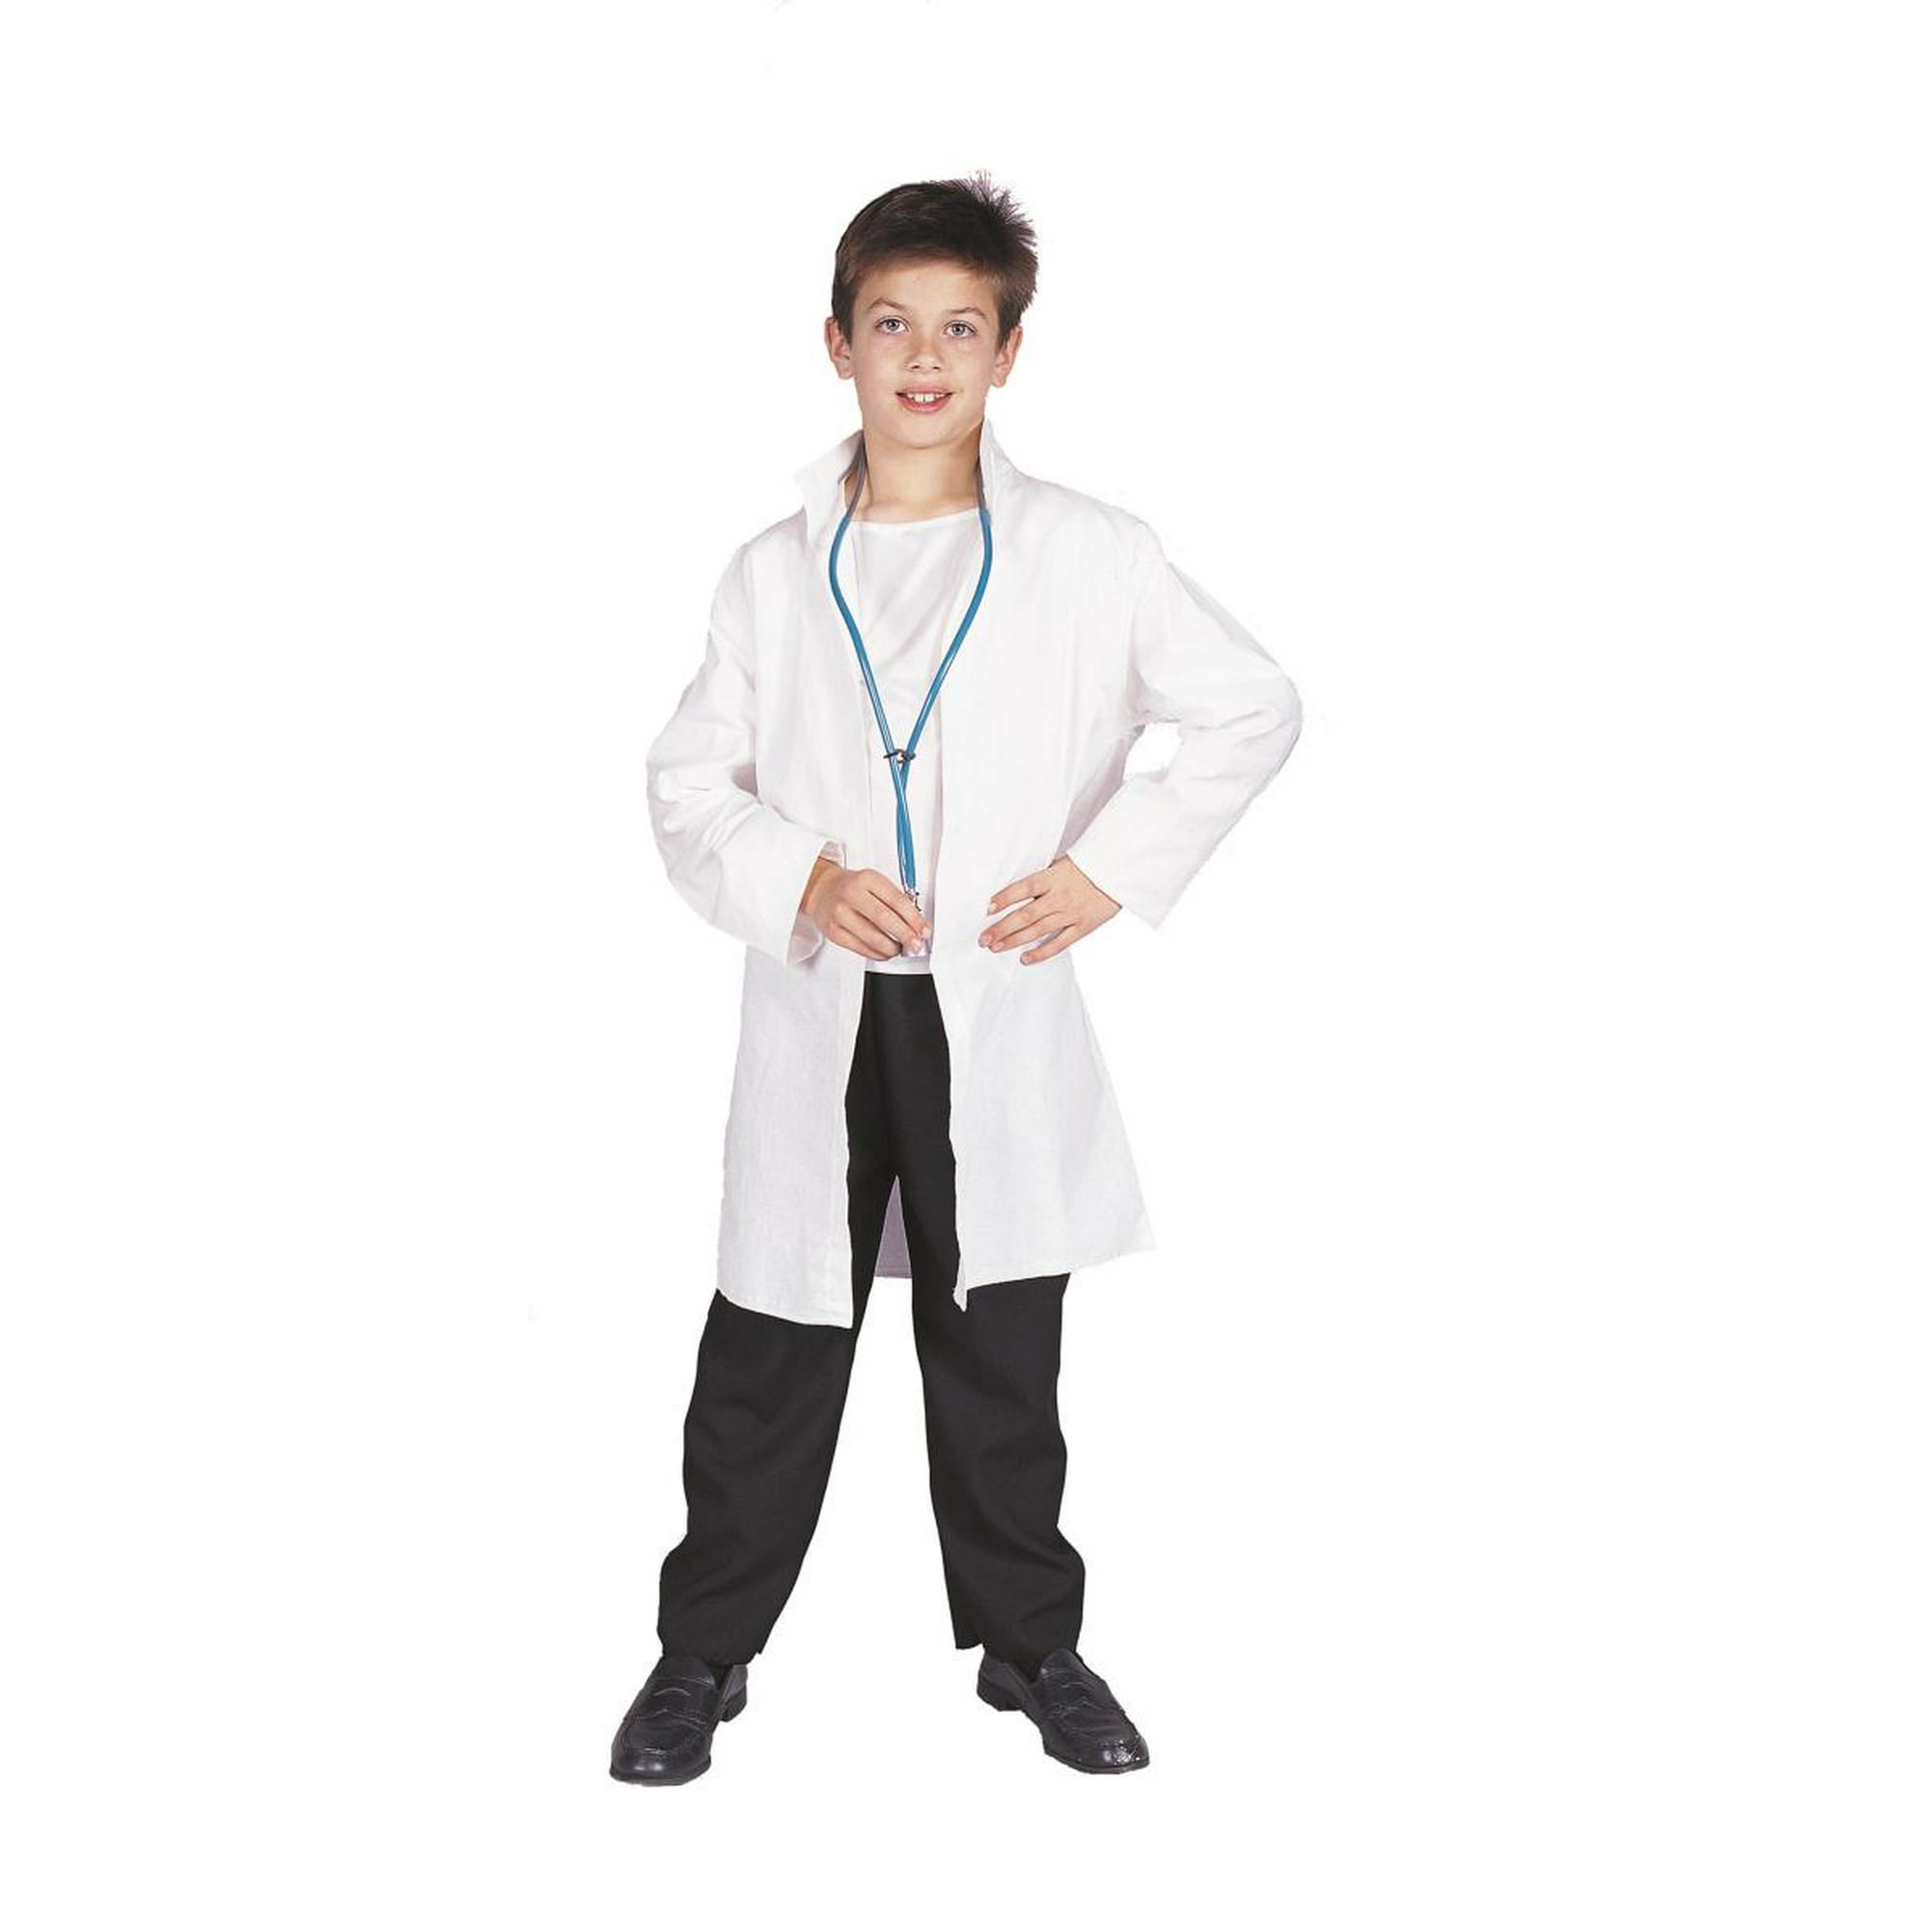 Batas de laboratorio para niños – World Medic's